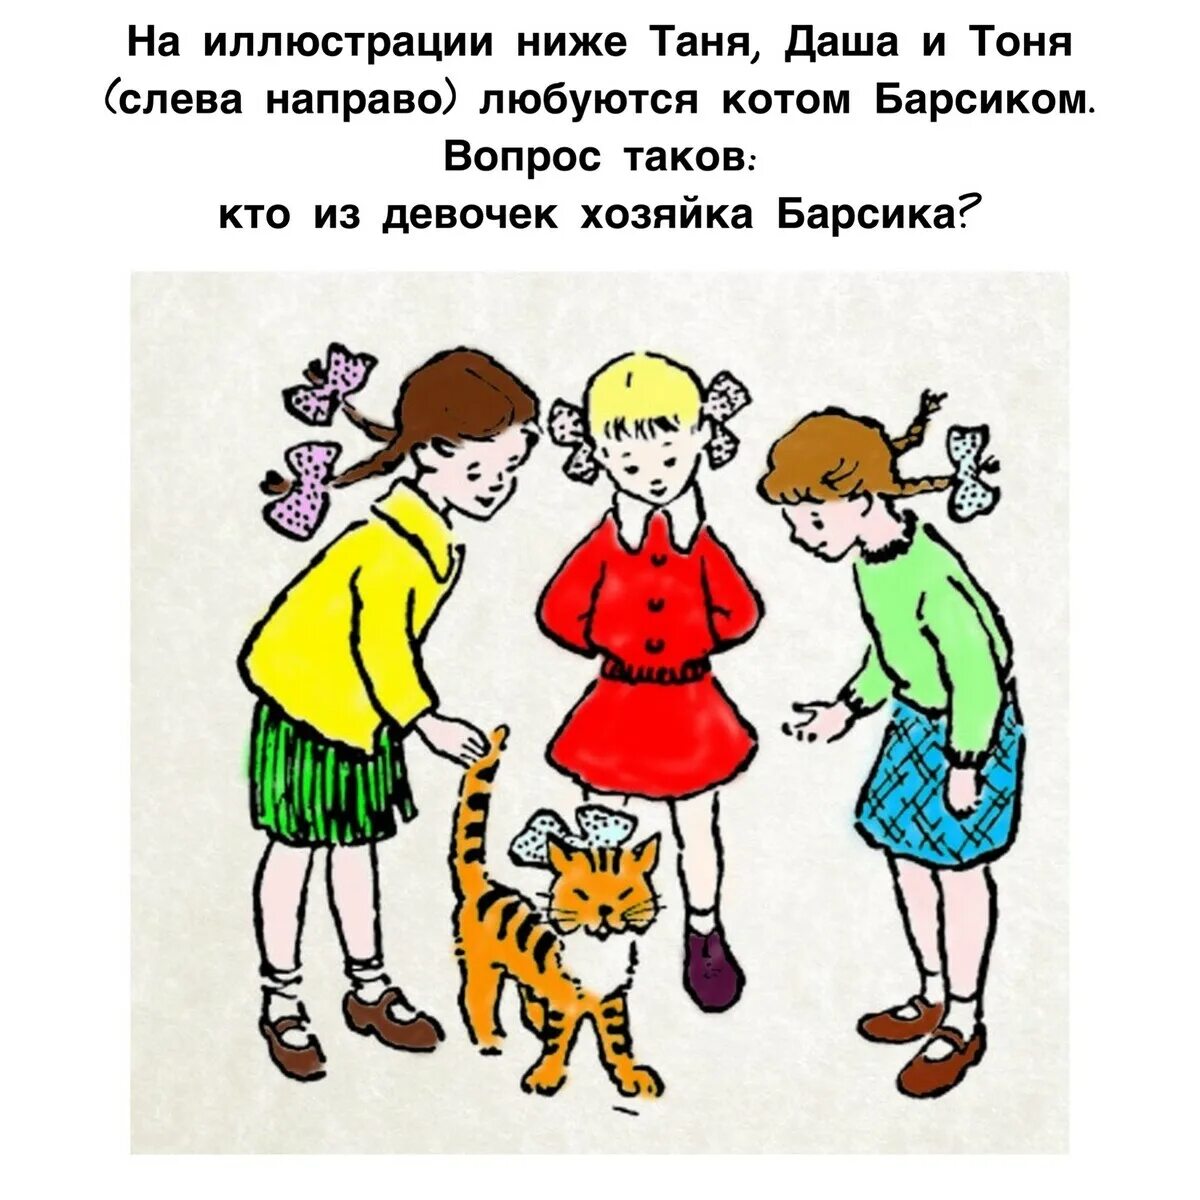 Ира таня галя чей кот мурзик. Загадка три девочки и кот кто хозяйка. Какая из трех девочек — хозяйка кота?.